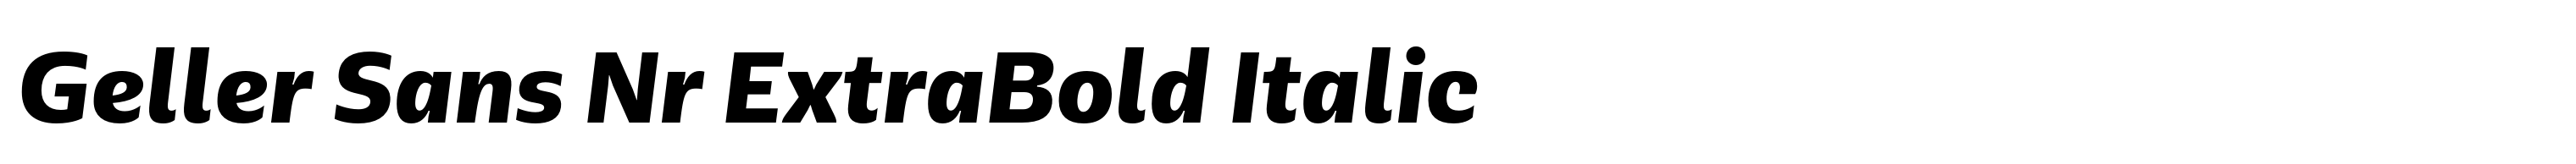 Geller Sans Nr ExtraBold Italic